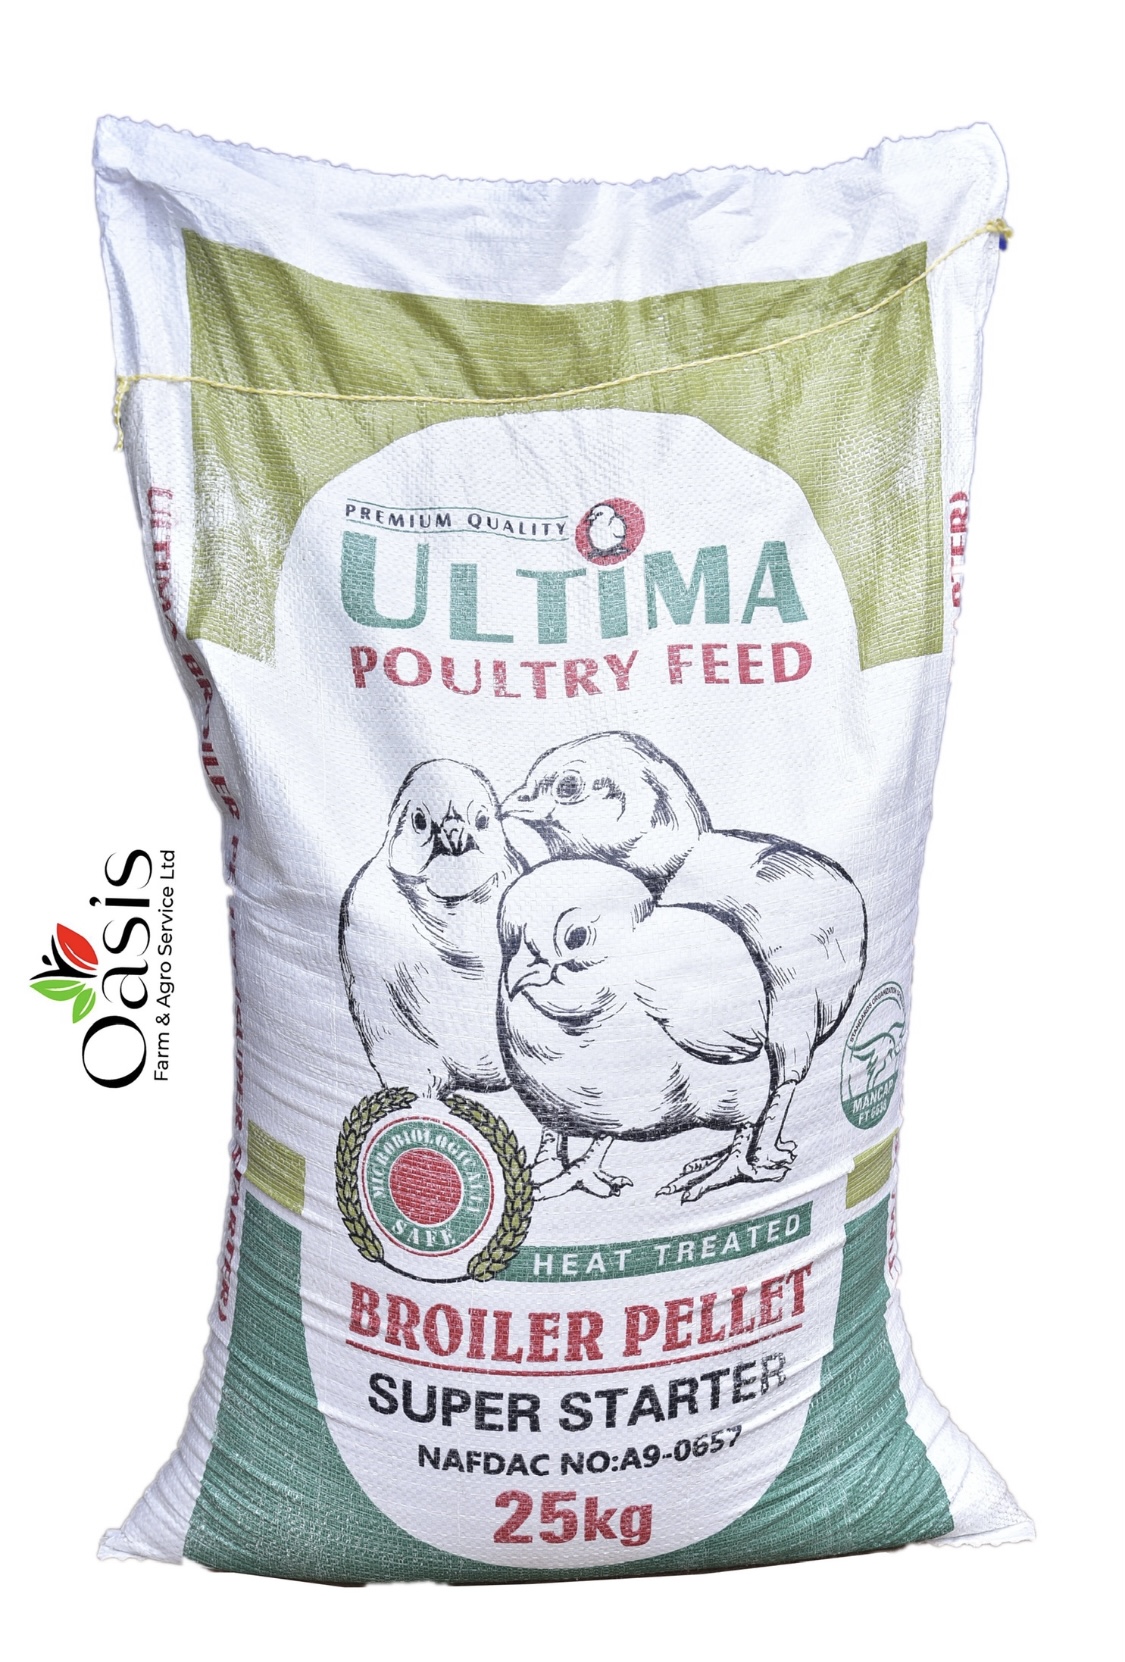 Ultima Poultry Feed Broiler Pellet Super Starter (25kg)